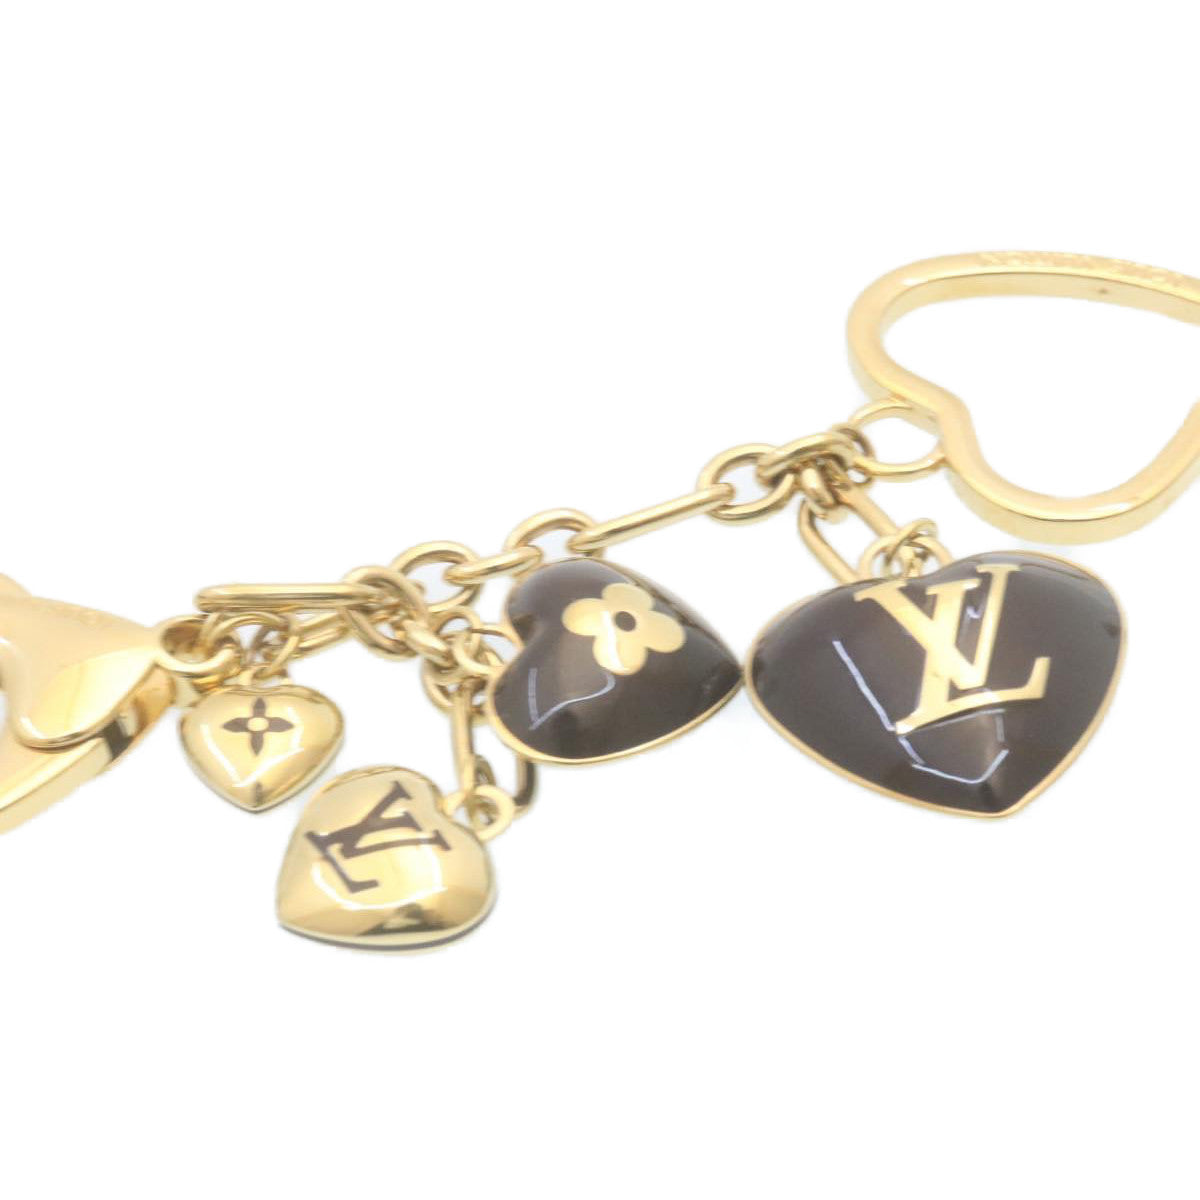 LOUIS VUITTON Bijoux Sac Coeur Heart Charm M65757 Gold Amarante LV Auth ki1591